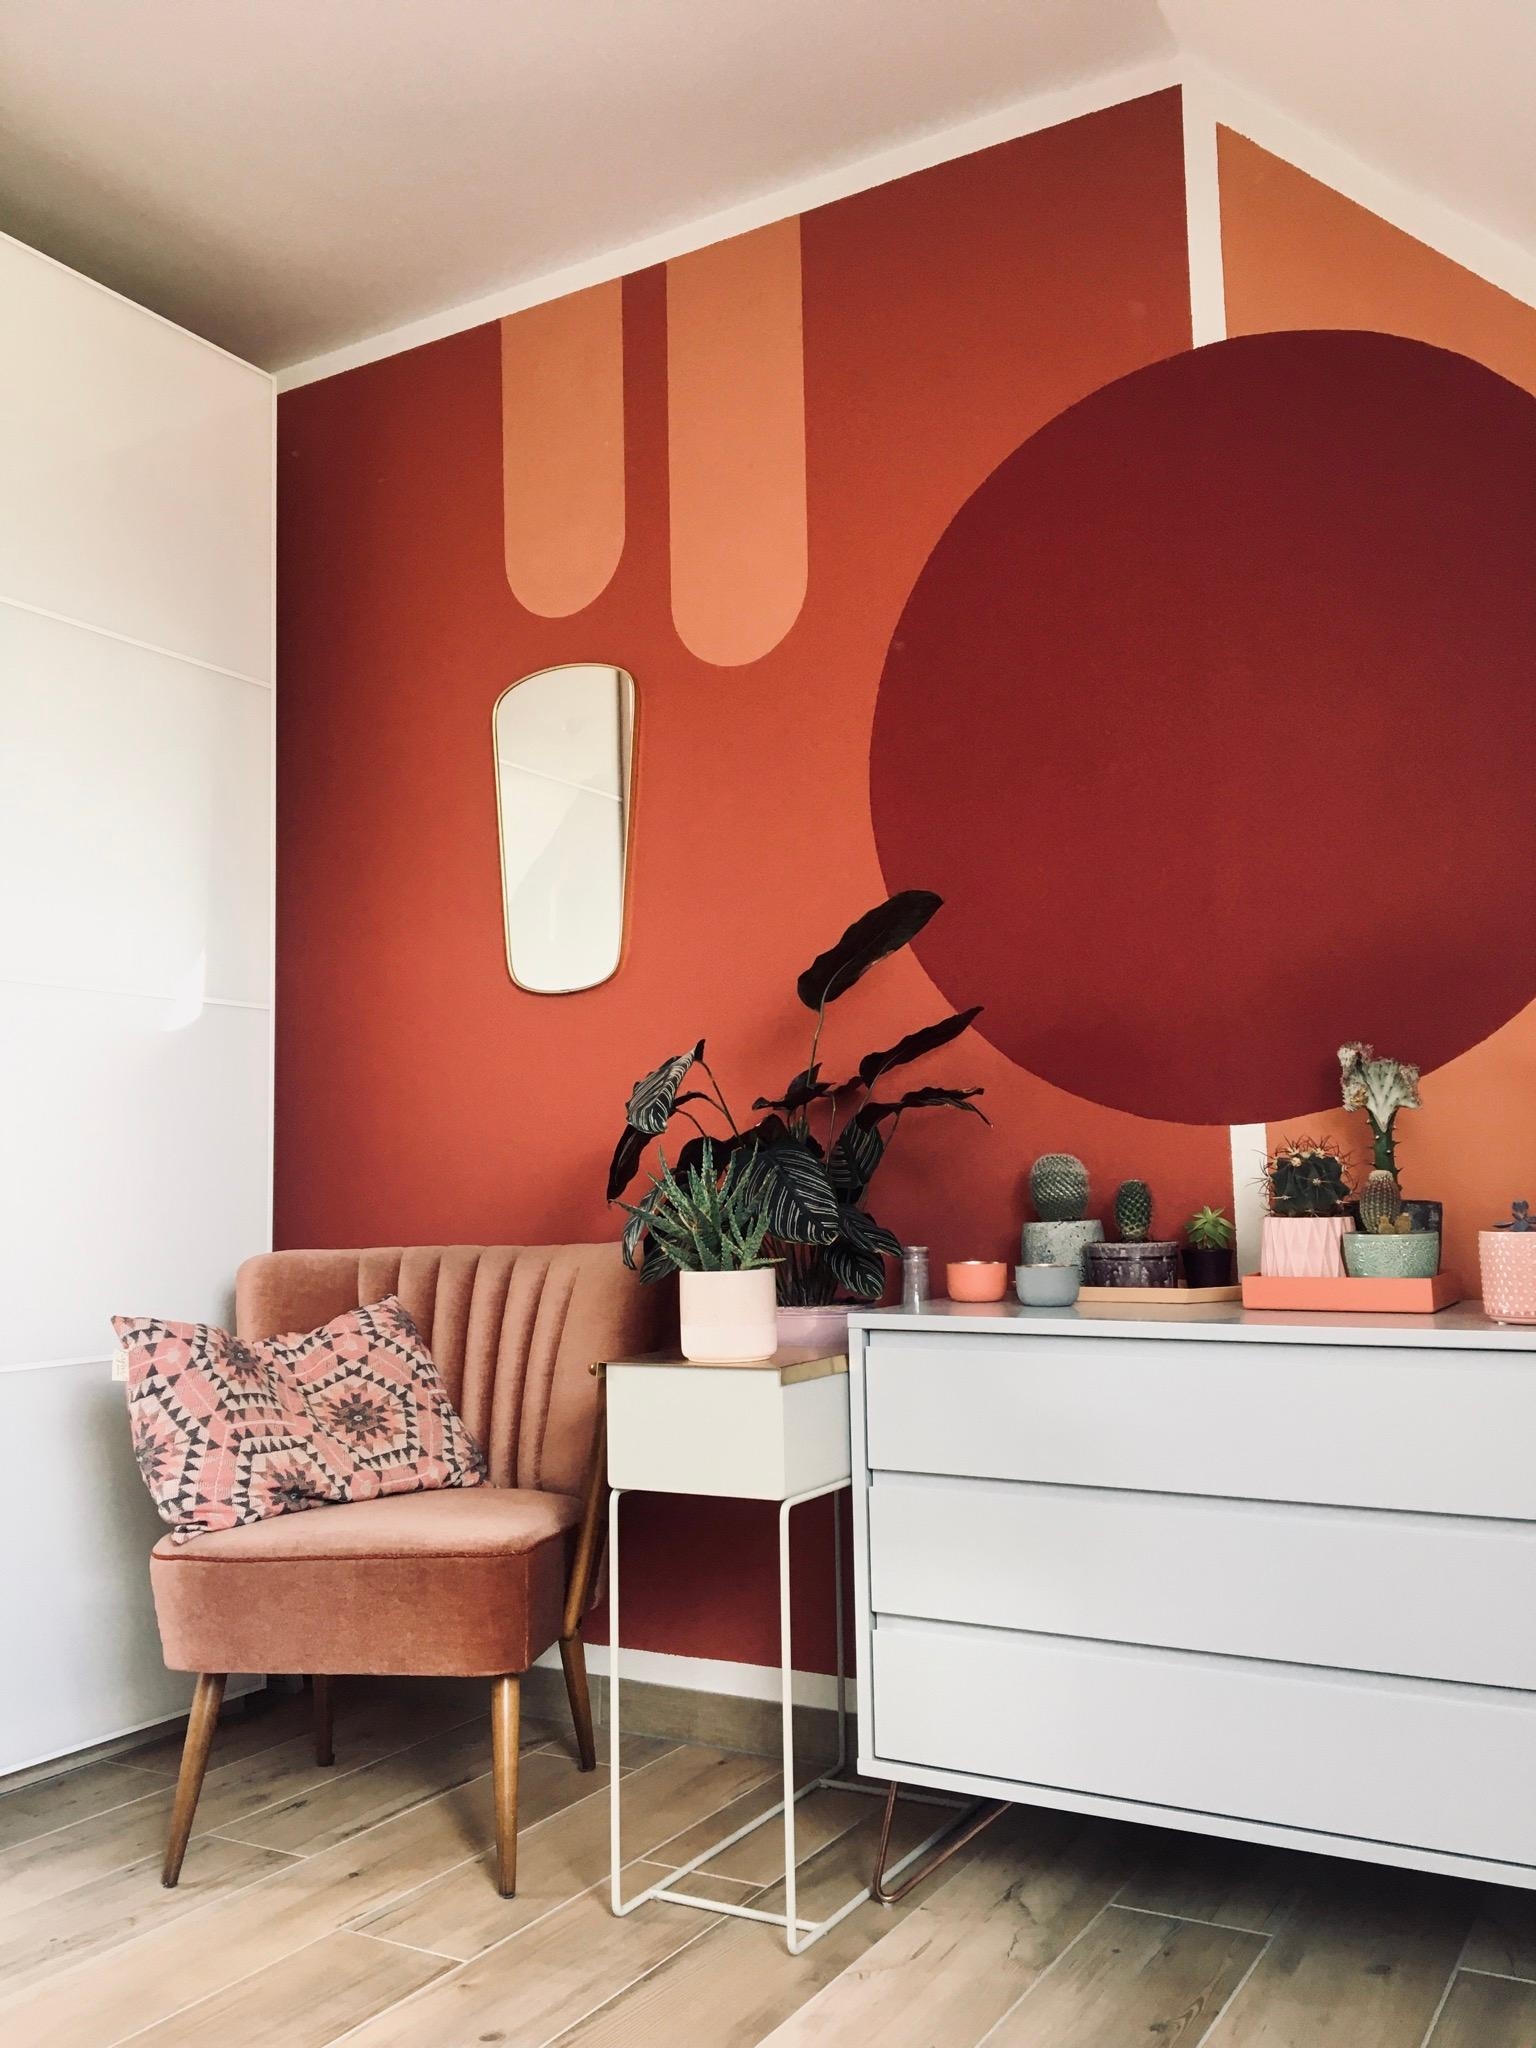 Warum denn immer nur eine Farbe pro Raum? #wandgestaltung #livingchallenge #mutzurfarbe